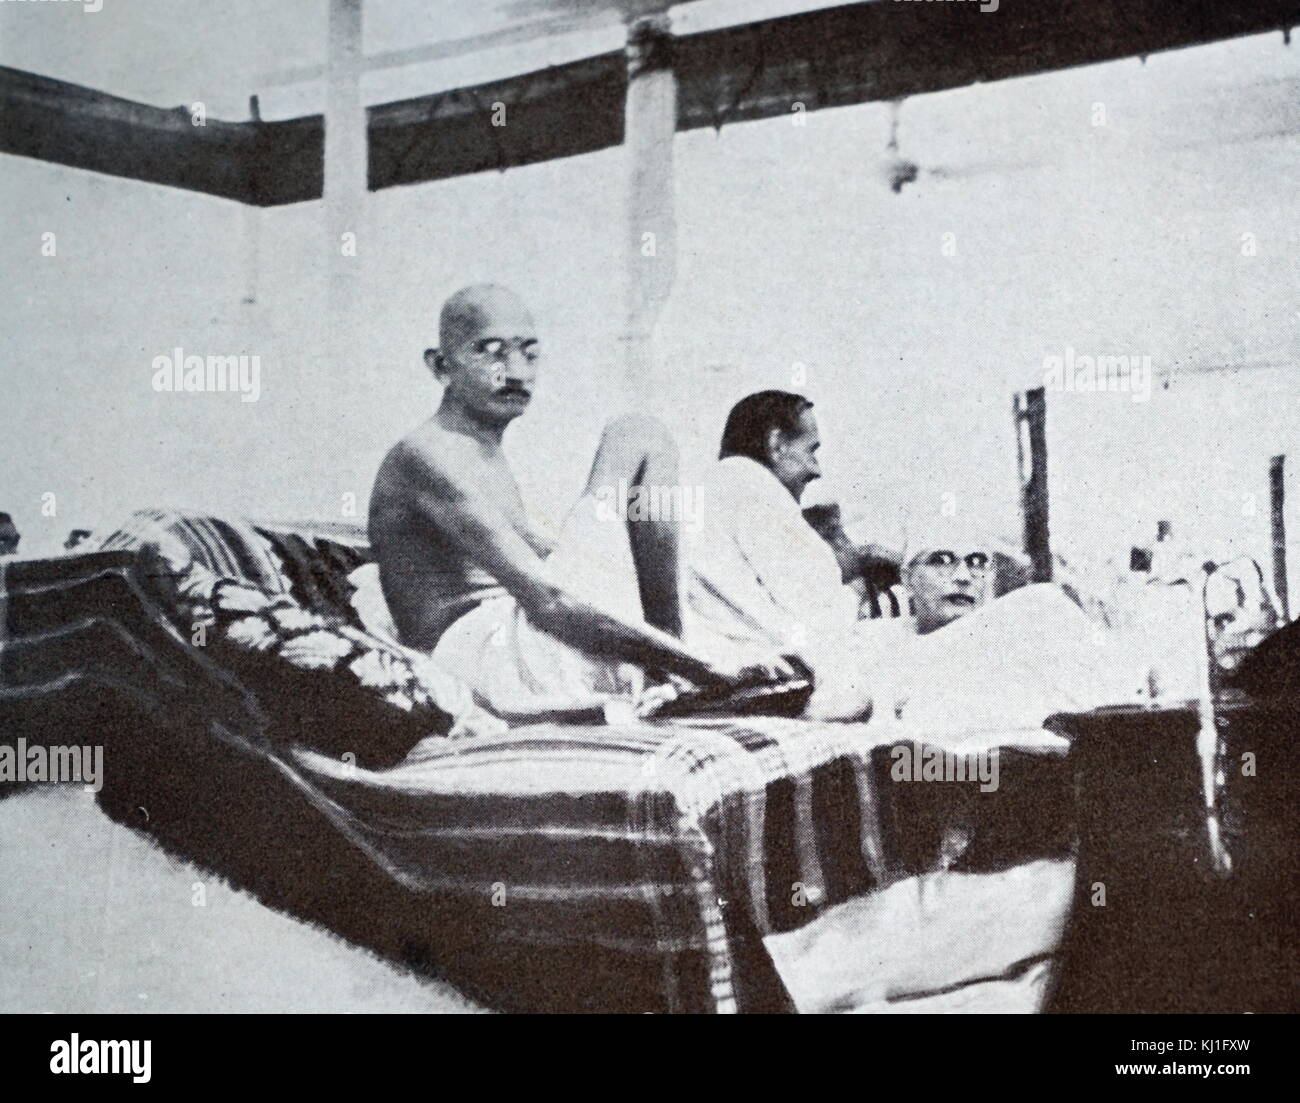 Mohandas Karamchand Gandhi (1869 - 1948) lors d'une réunion de l'Indian National Congress, 1940. Gandhi a été le principal chef de l'indépendance de l'Inde en mouvement a décidé de l'Inde. Banque D'Images